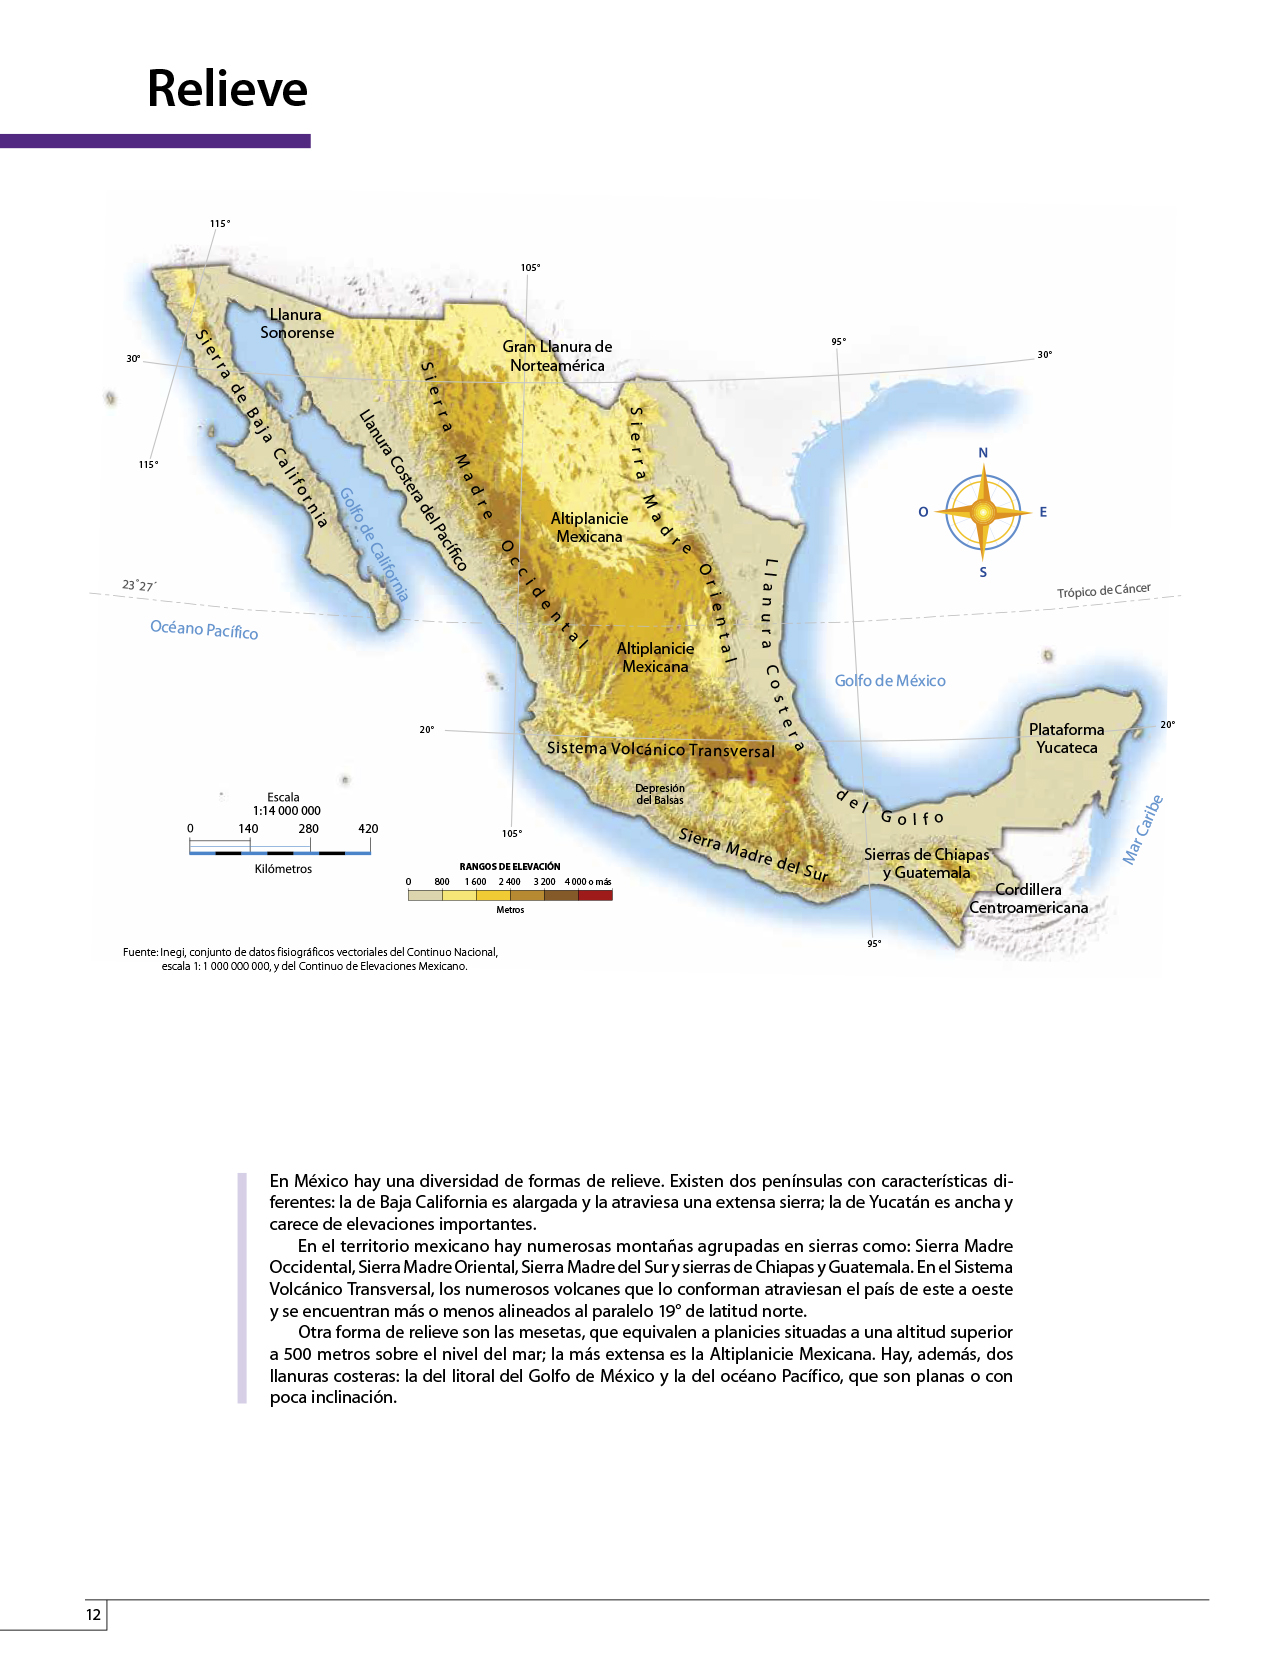 Atlas de México cuarto grado 2017-2018 - Página 12 de 130 - Libros de